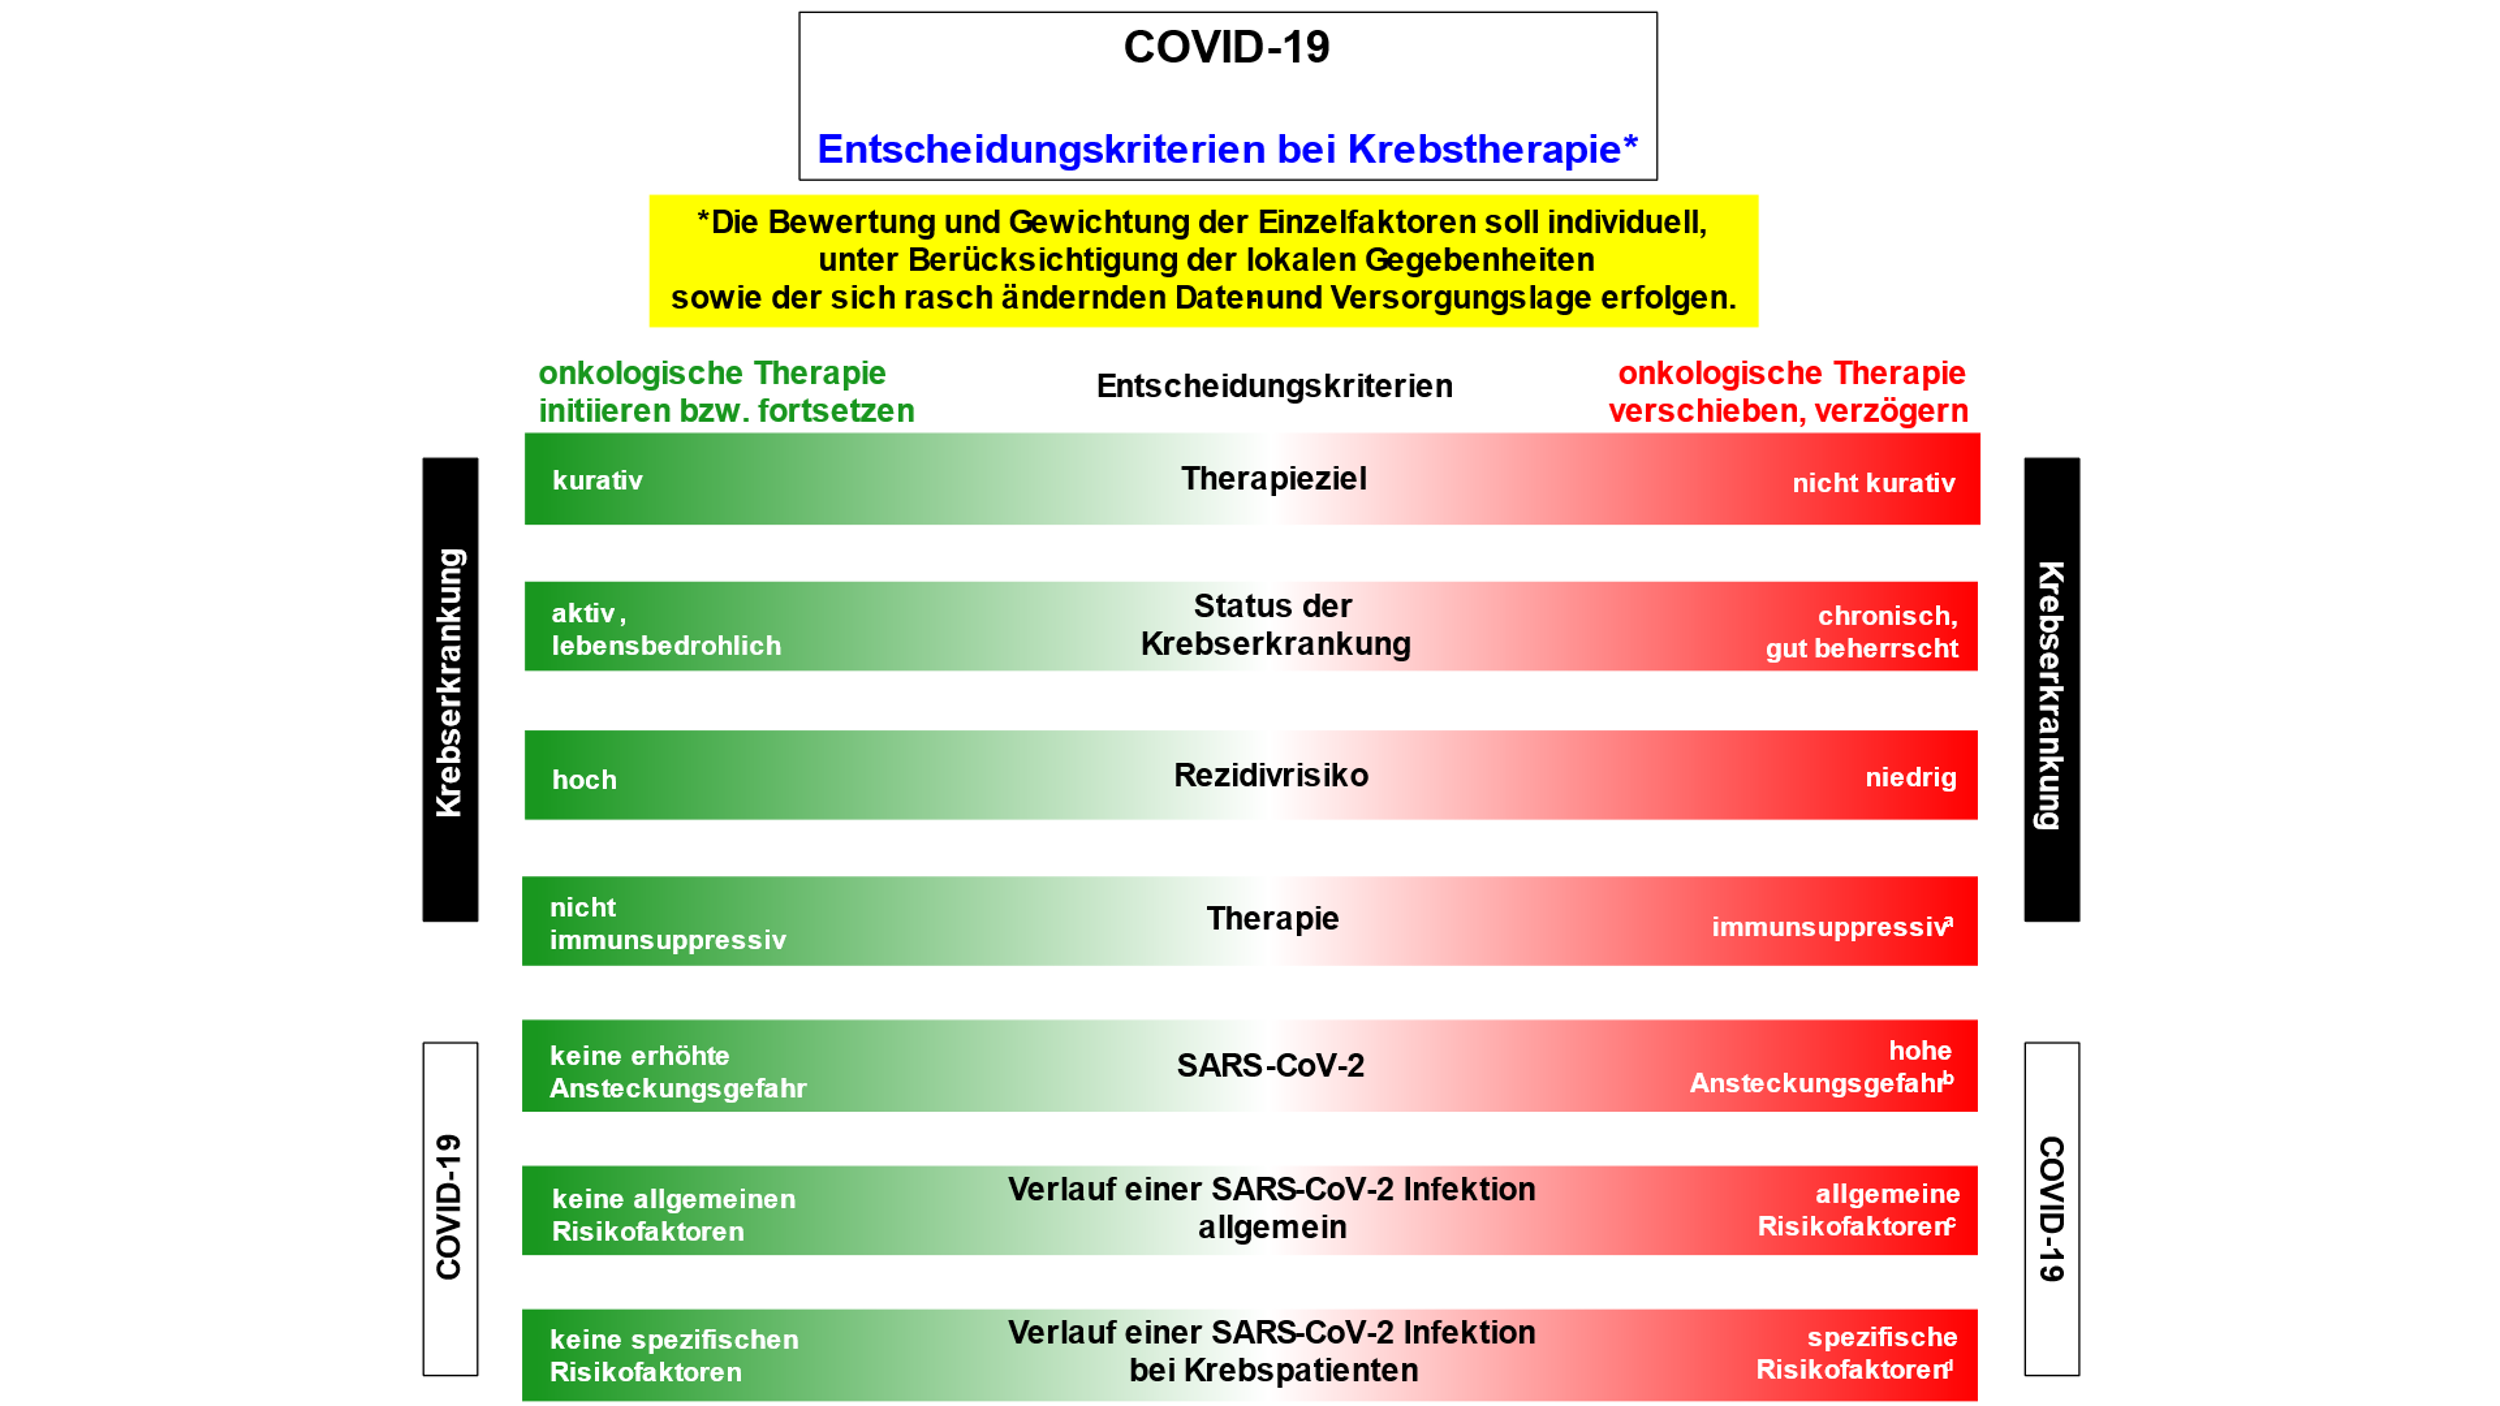 COVID-19: Entscheidungskriterien für eine Krebstherapie 